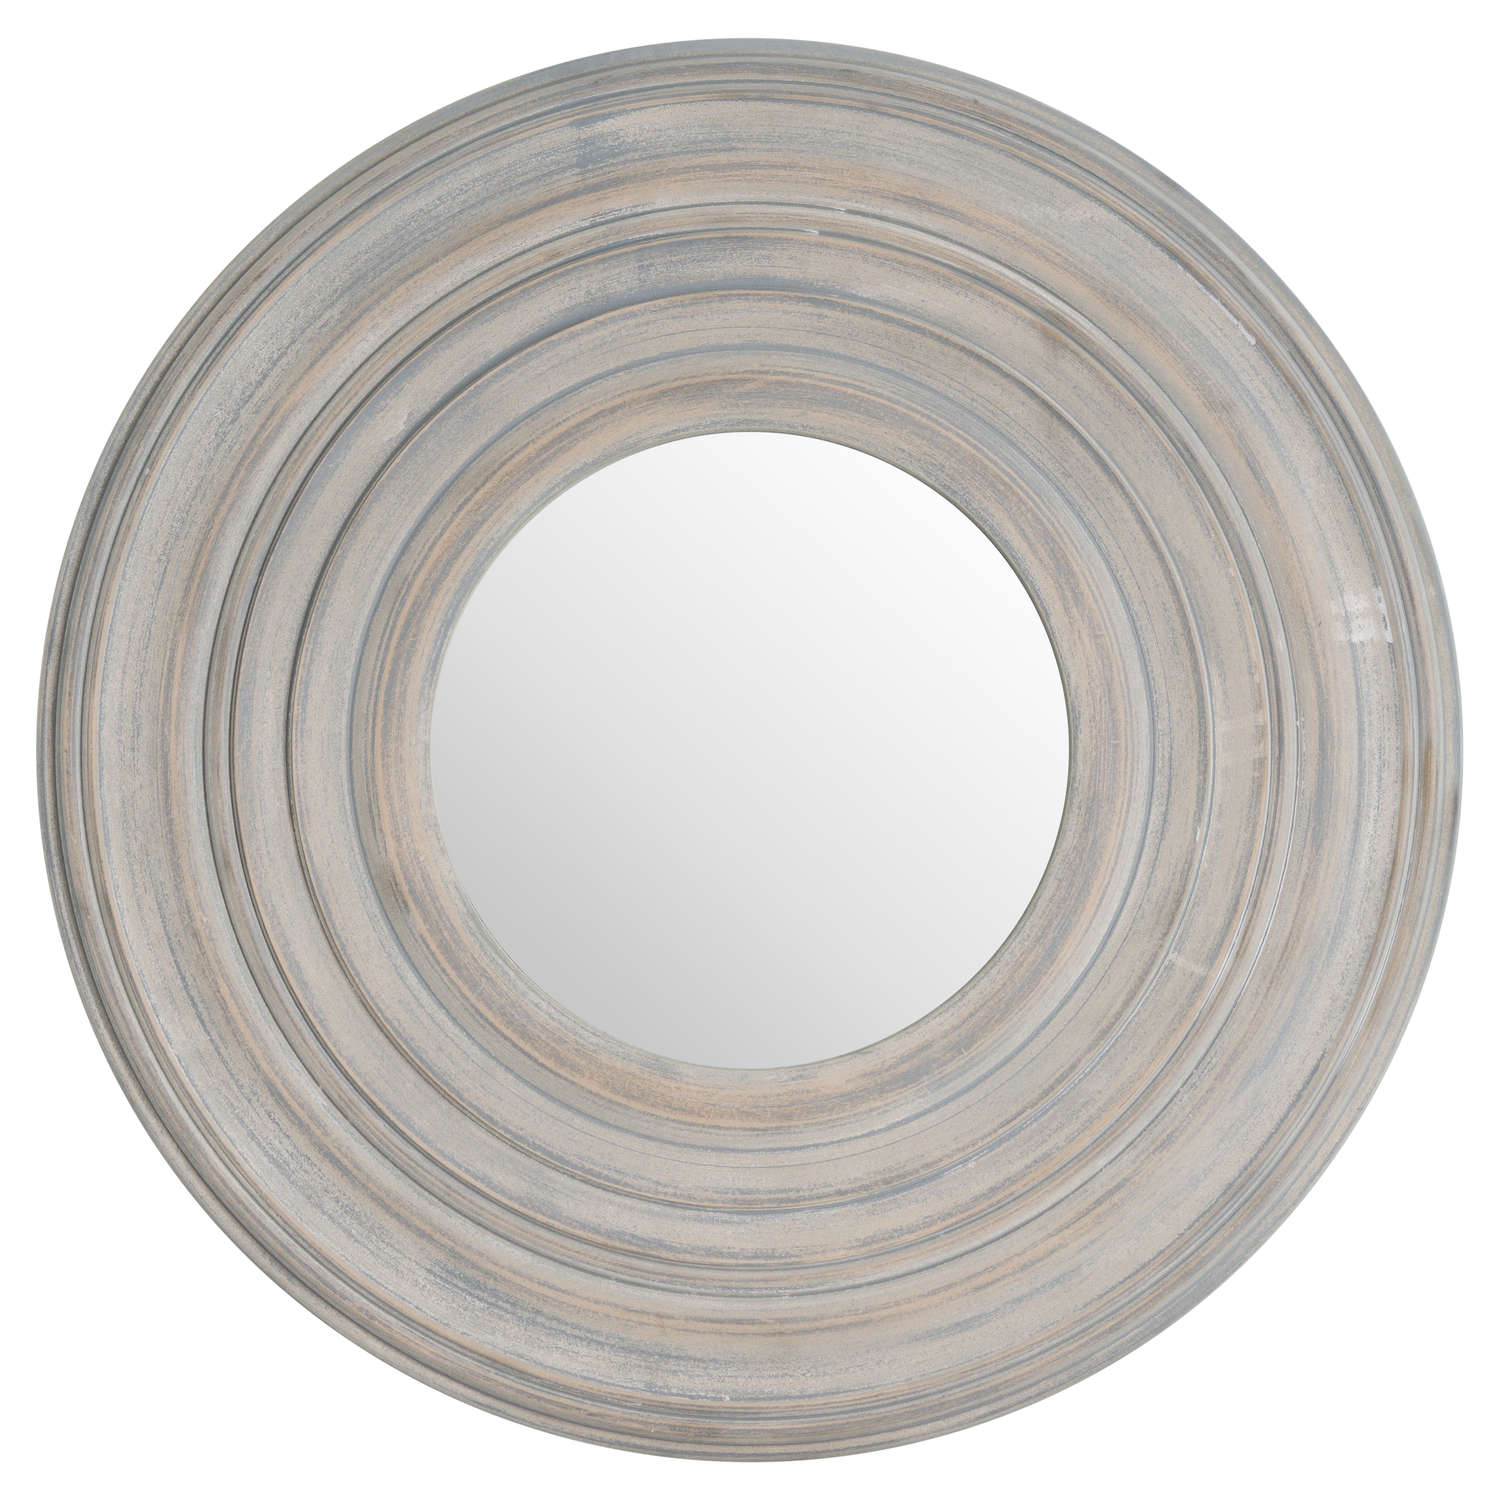 Grey Painted Round Textured Mirror